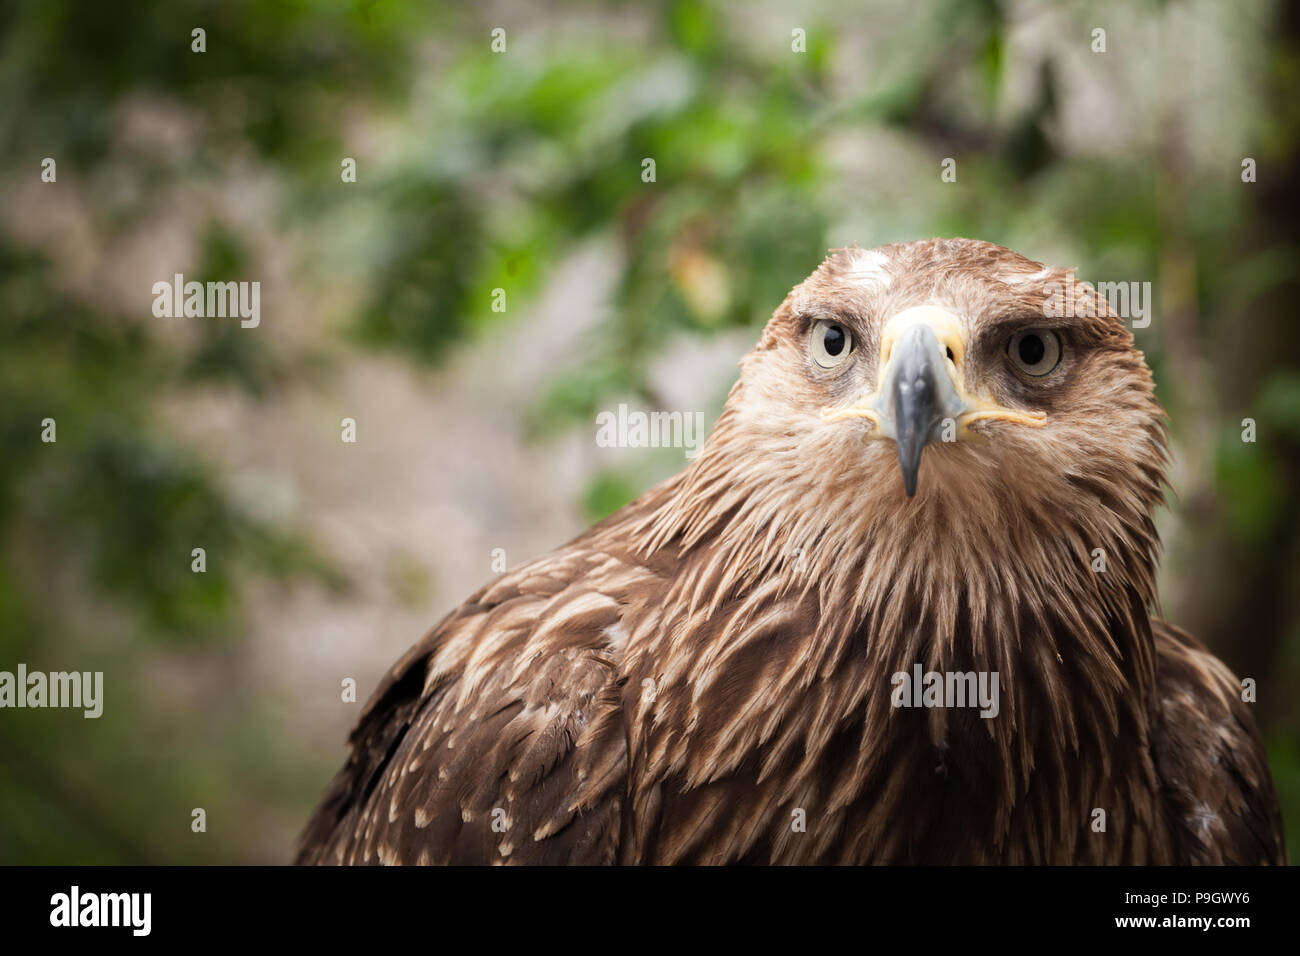 Close-up retrato de águila real Aquila chrysaetos, uno de los mejor conocidos de aves de presa Foto de stock